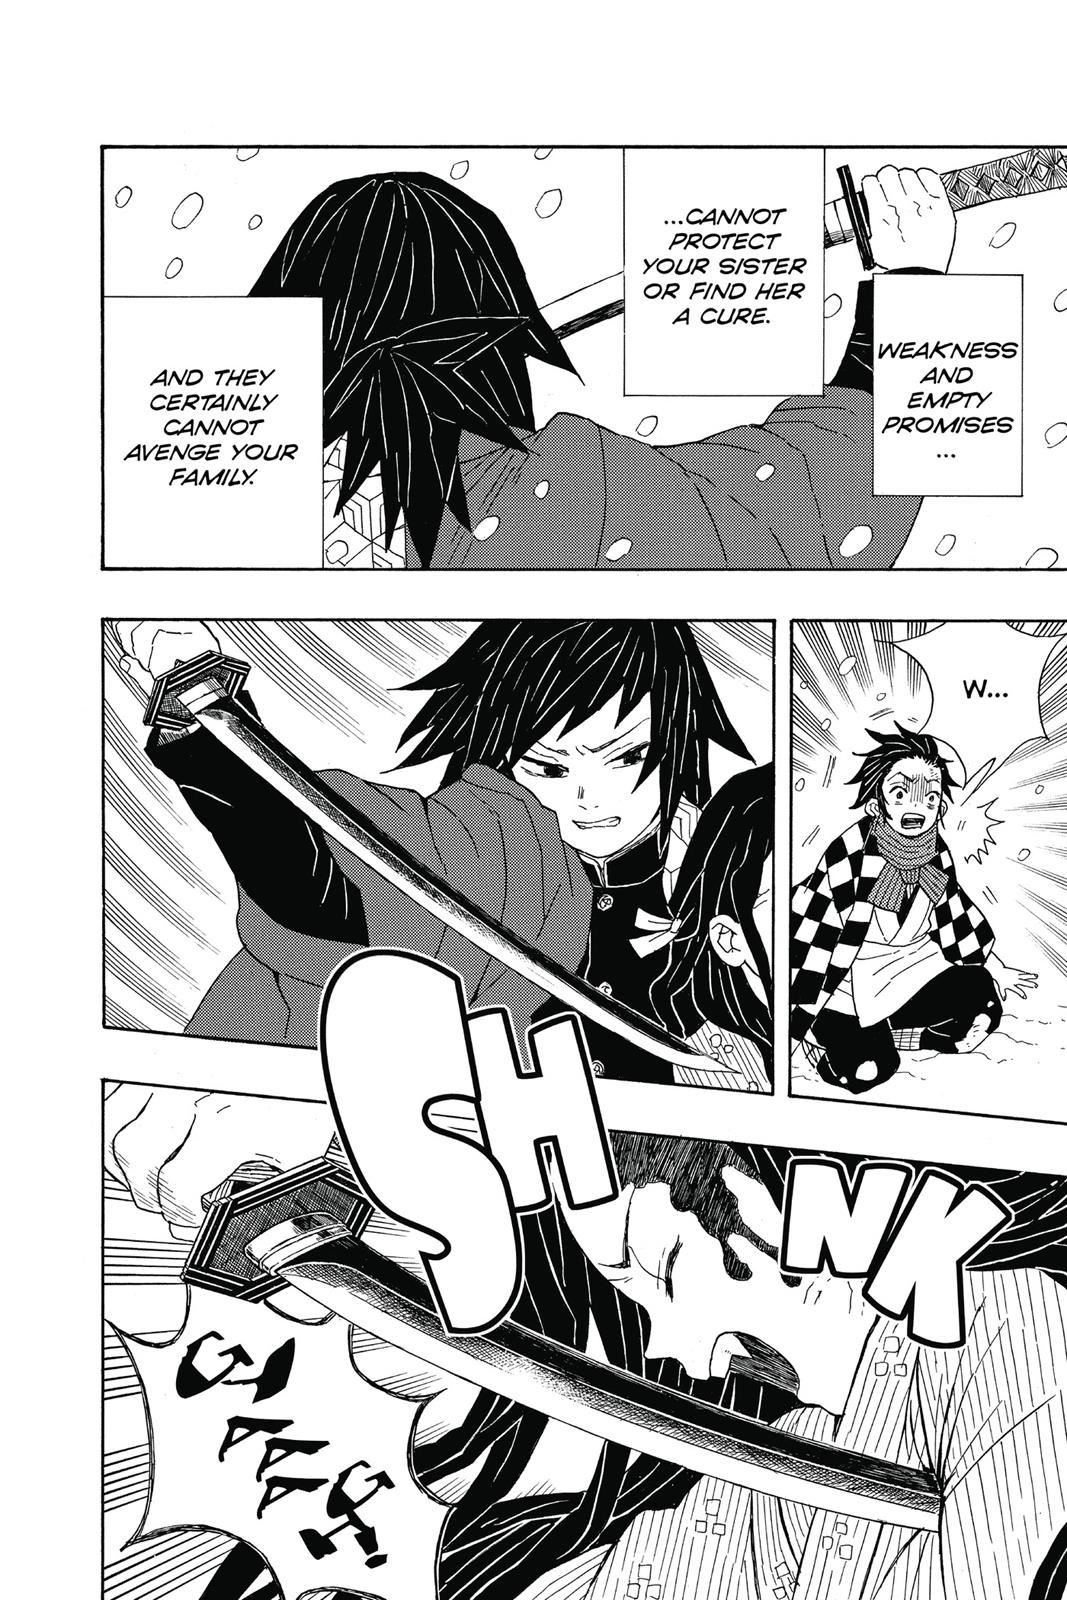 Demon Slayer Manga Manga Chapter - 1 - image 23